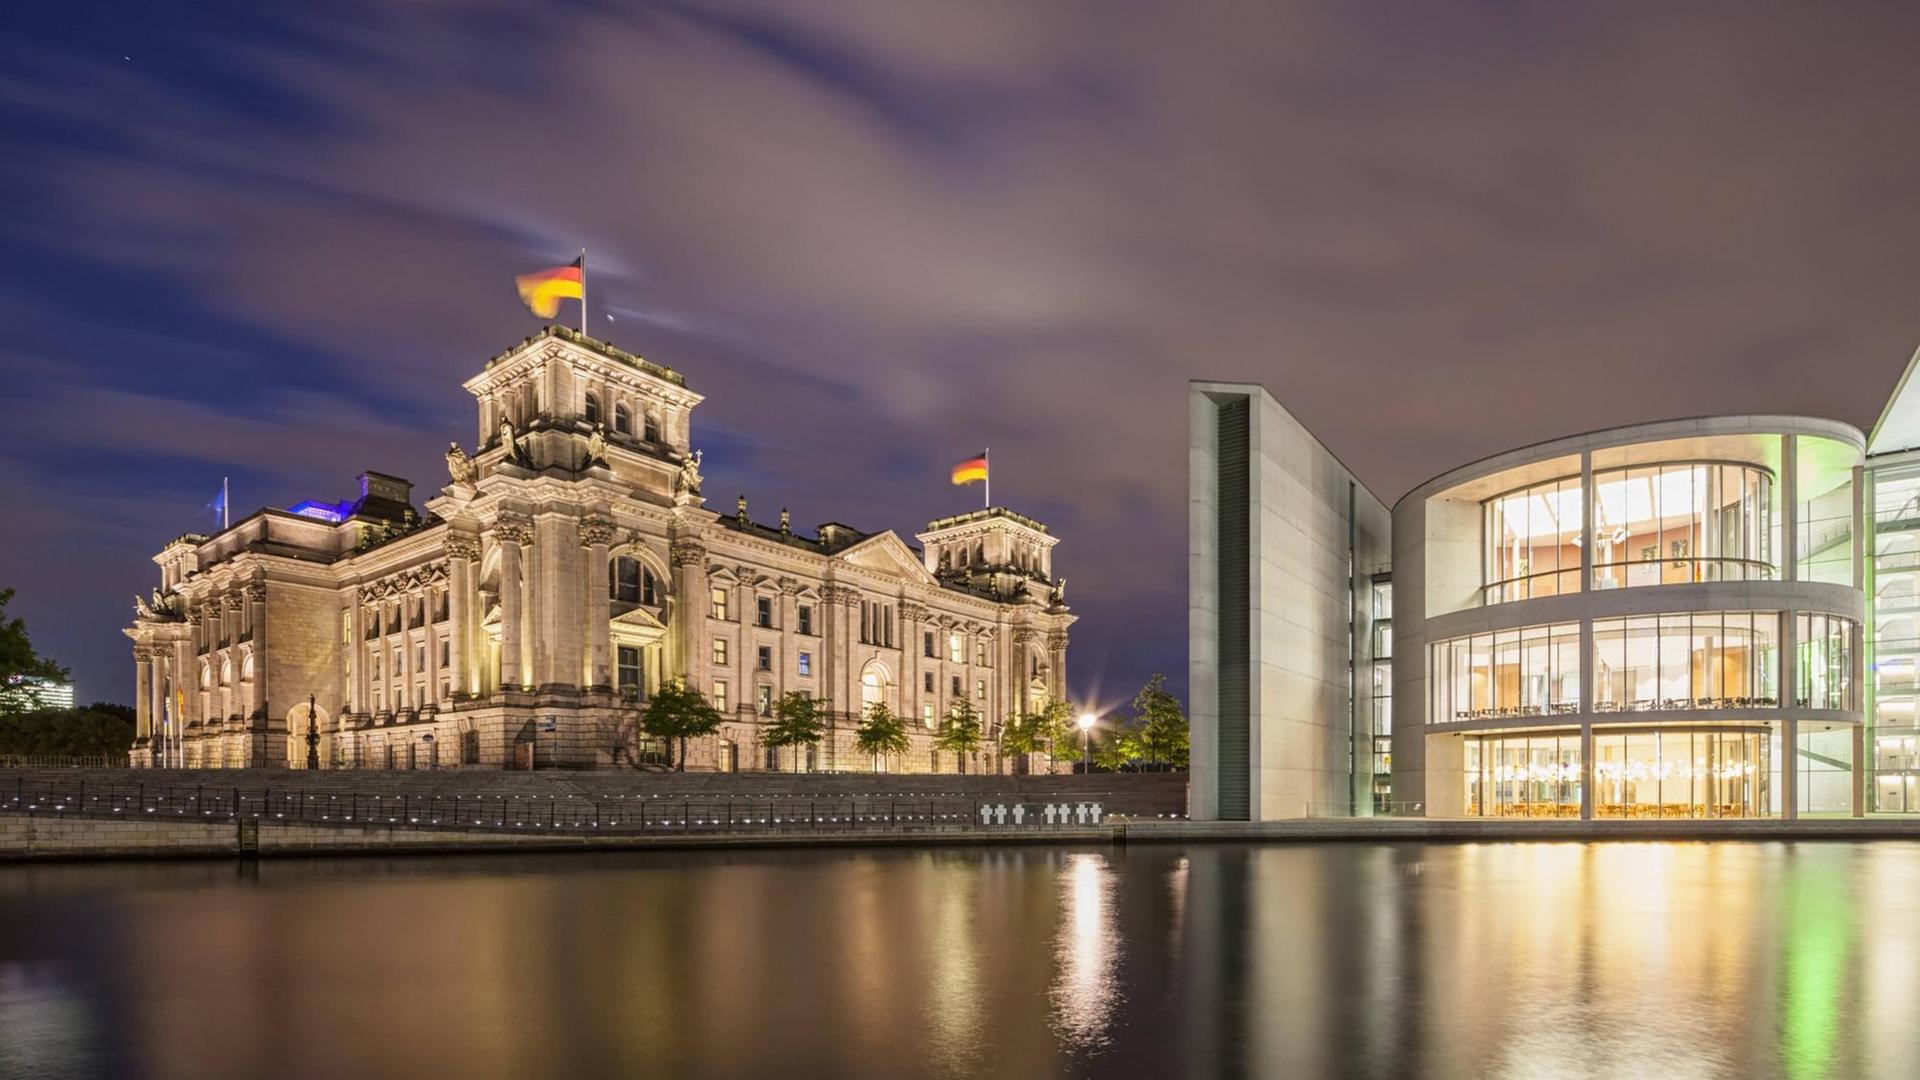 Sie sehen den Reichstag und das Paul-Löbe-Haus bei Nacht.